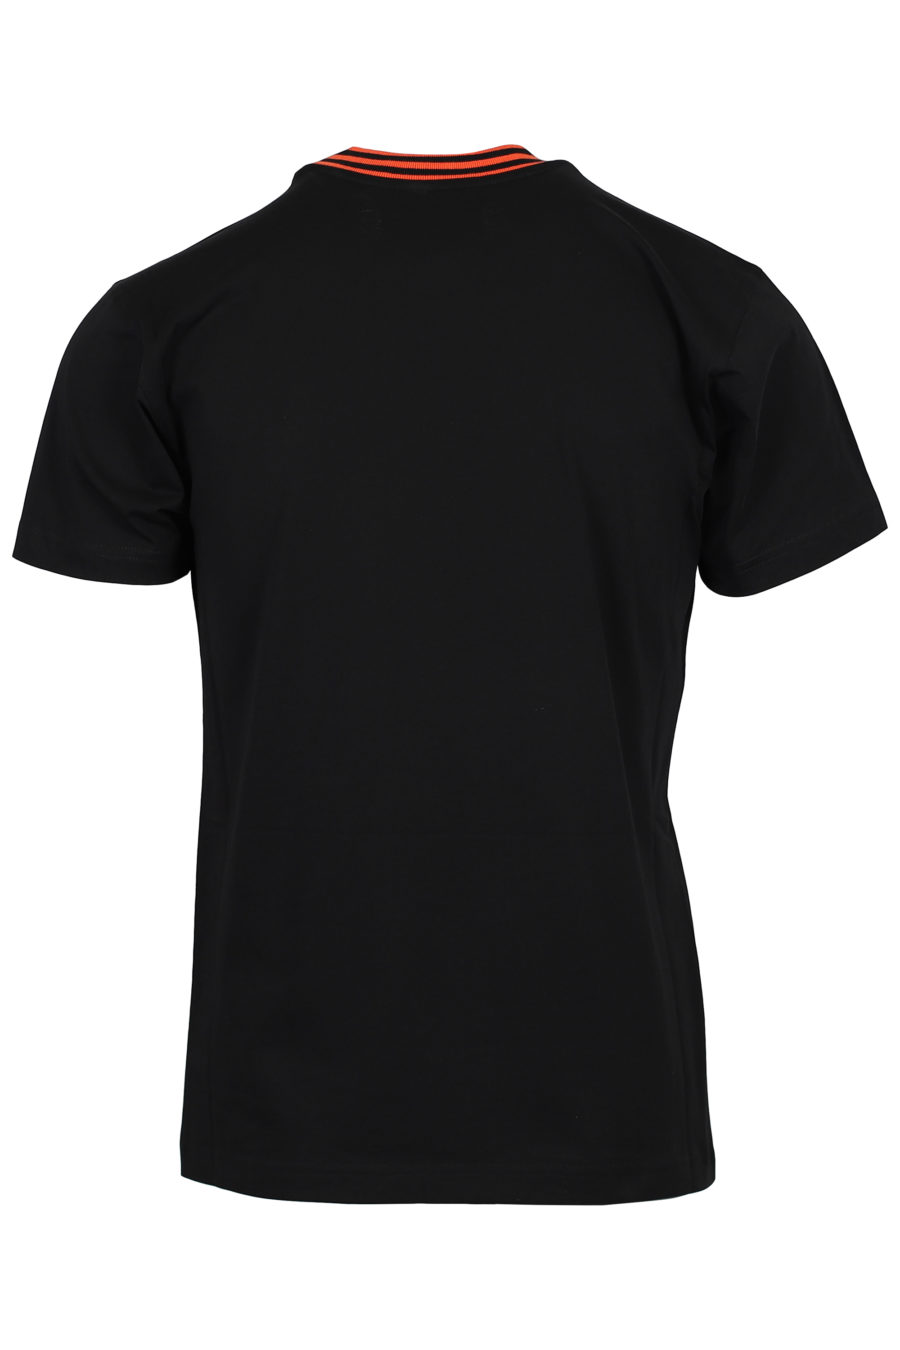 T-shirt preta com ursinho de peluche - IMG 2045